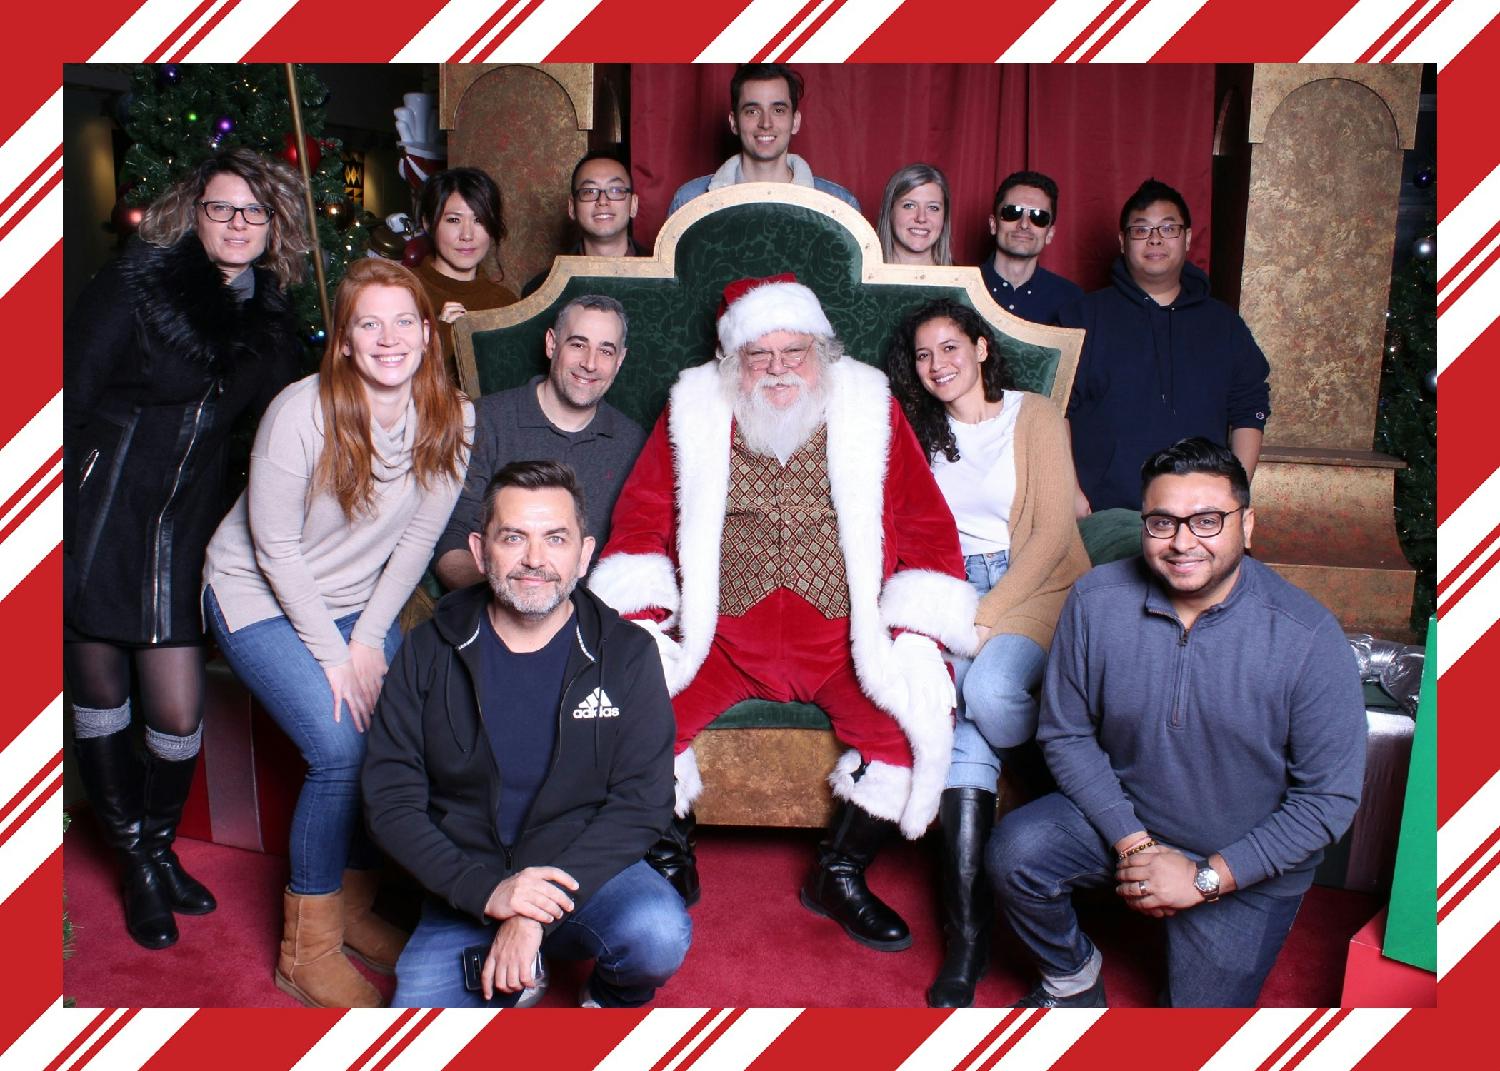 2019 Team Visit to See Santa